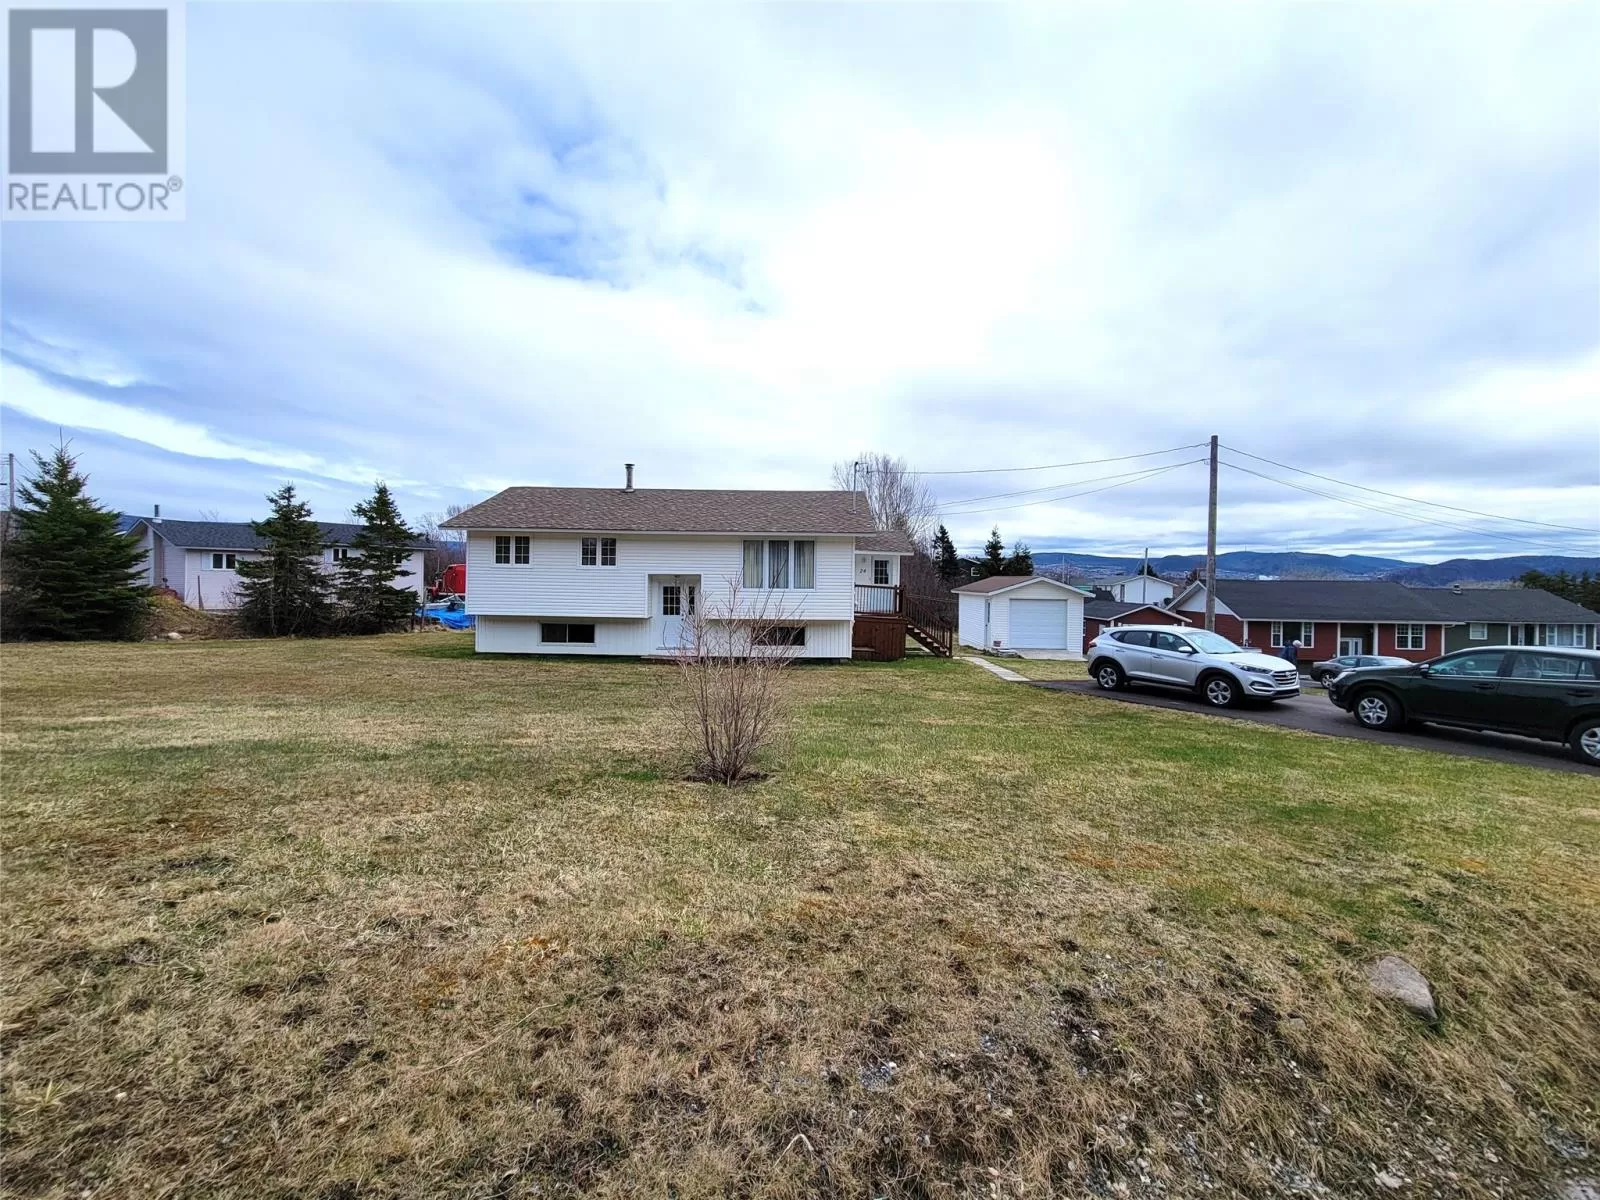 House for rent: 24 School Lane, Irishtown-Summerside, Newfoundland & Labrador A2H 4A1